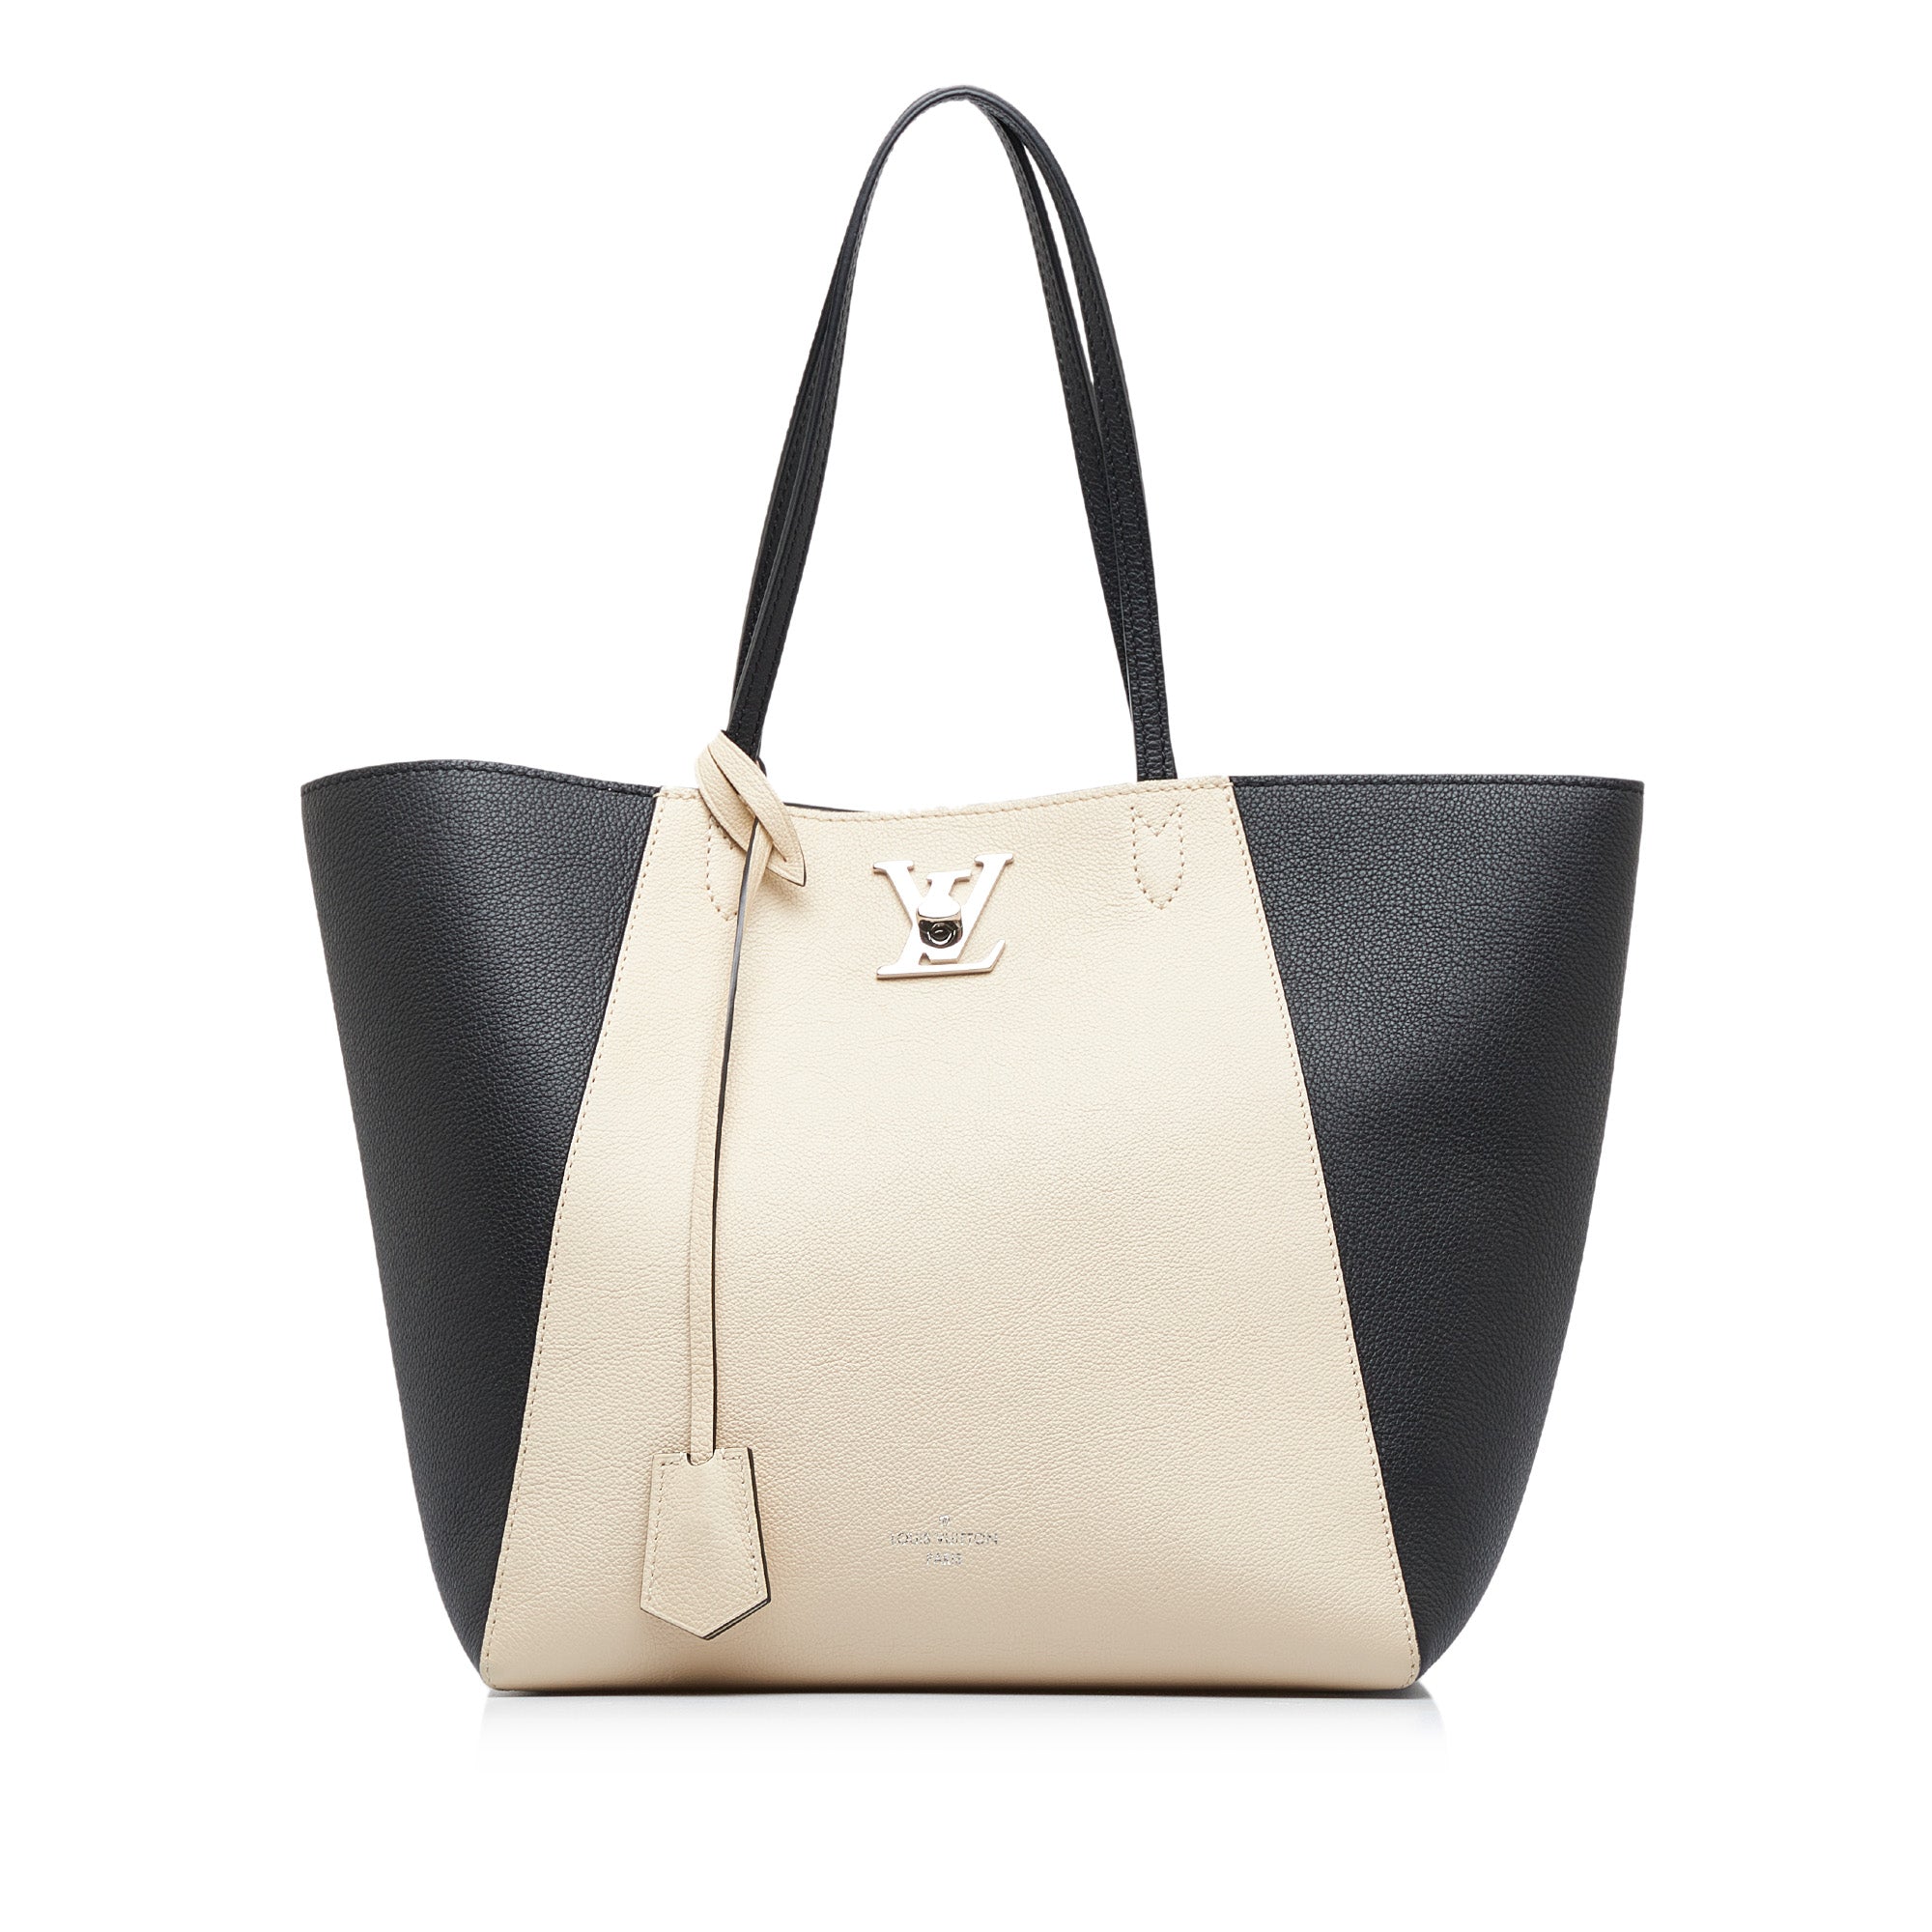 White Louis Vuitton LockMe Cabas Tote Bag